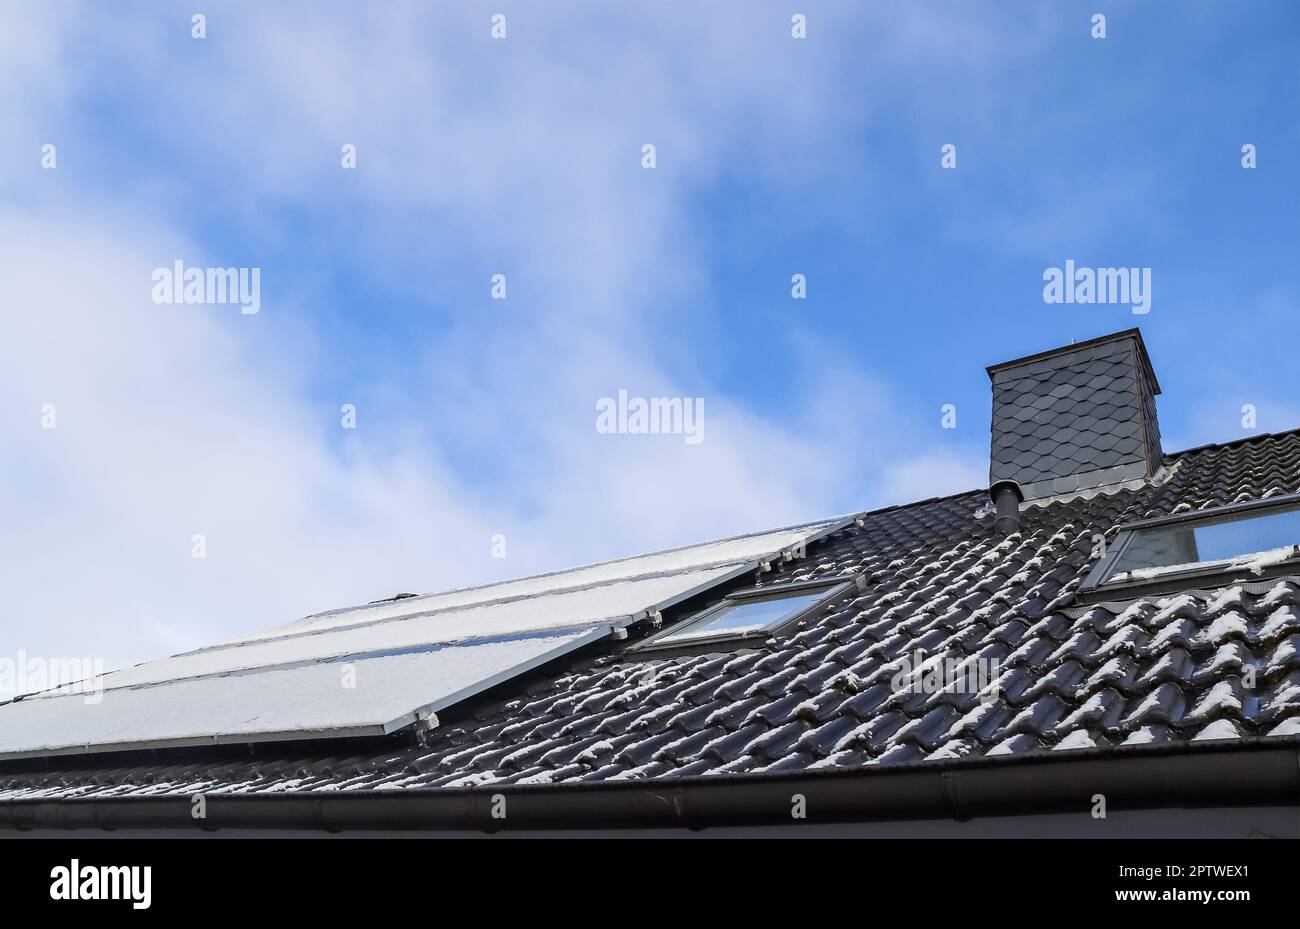 Panneaux solaires avec de la neige sur elle produisant de l'énergie propre sur un toit d'une maison résidentielle Banque D'Images